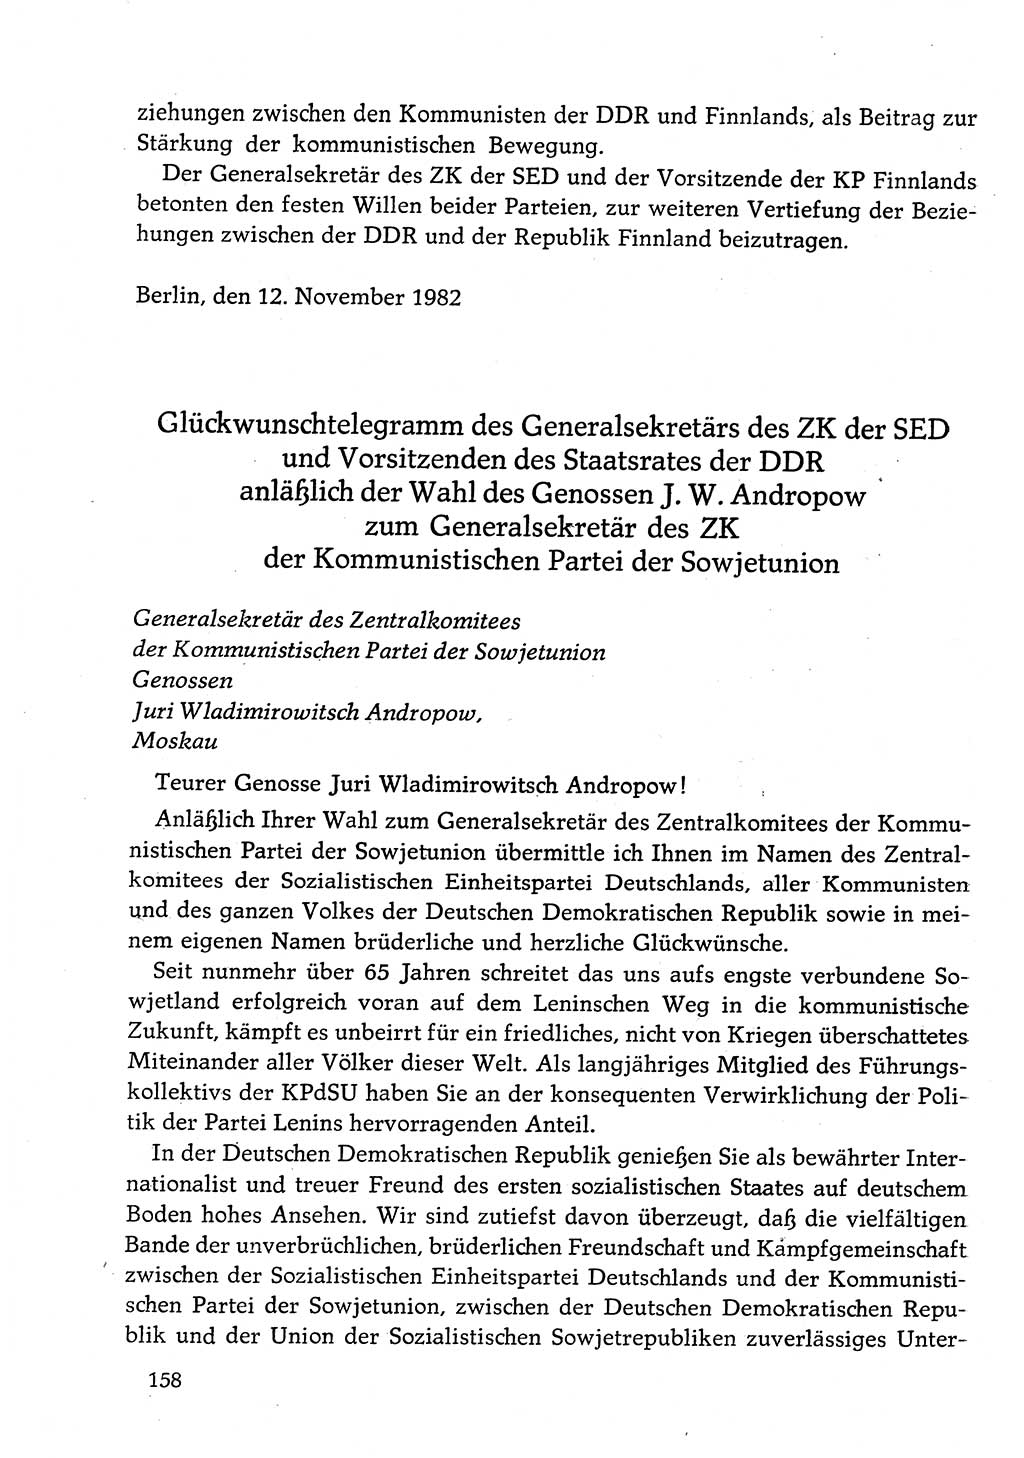 Dokumente der Sozialistischen Einheitspartei Deutschlands (SED) [Deutsche Demokratische Republik (DDR)] 1982-1983, Seite 158 (Dok. SED DDR 1982-1983, S. 158)